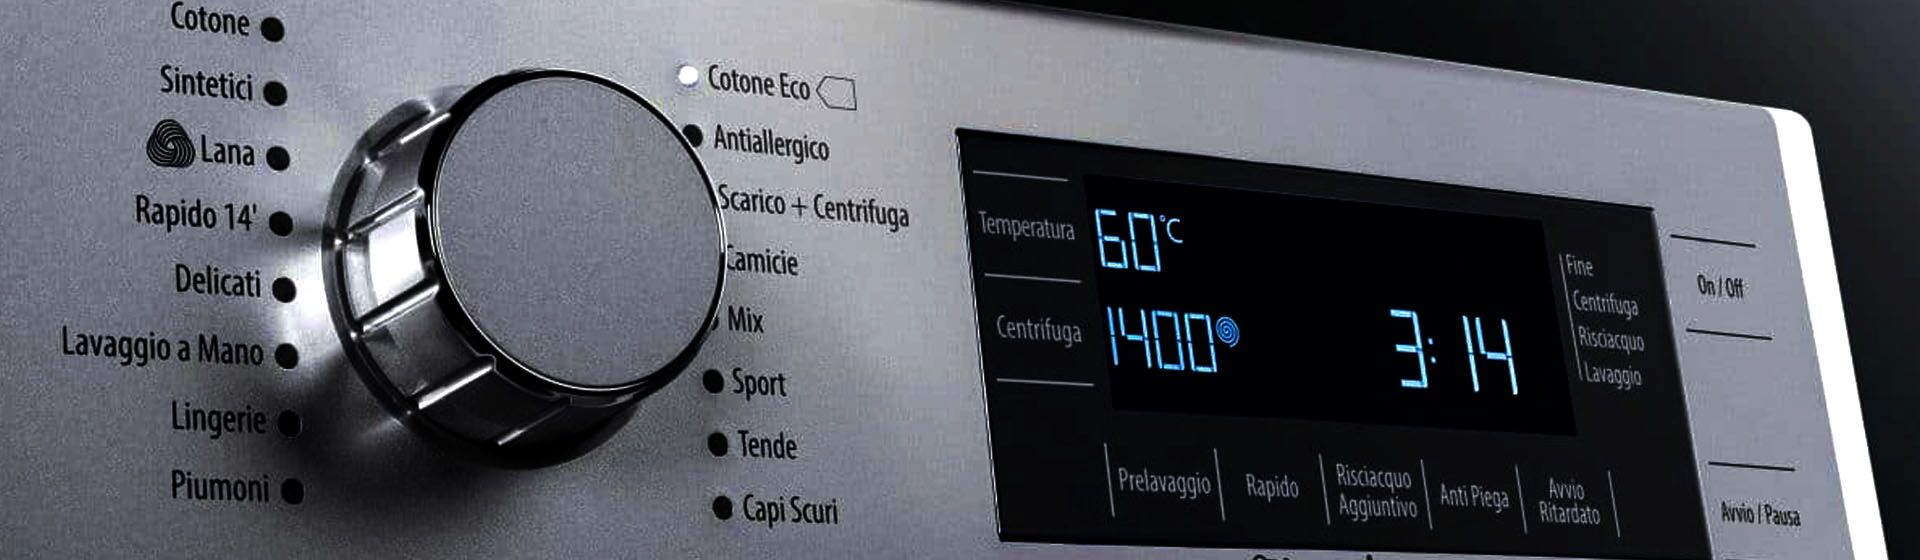 Температурные режимы в стиральных машинах от SMEG